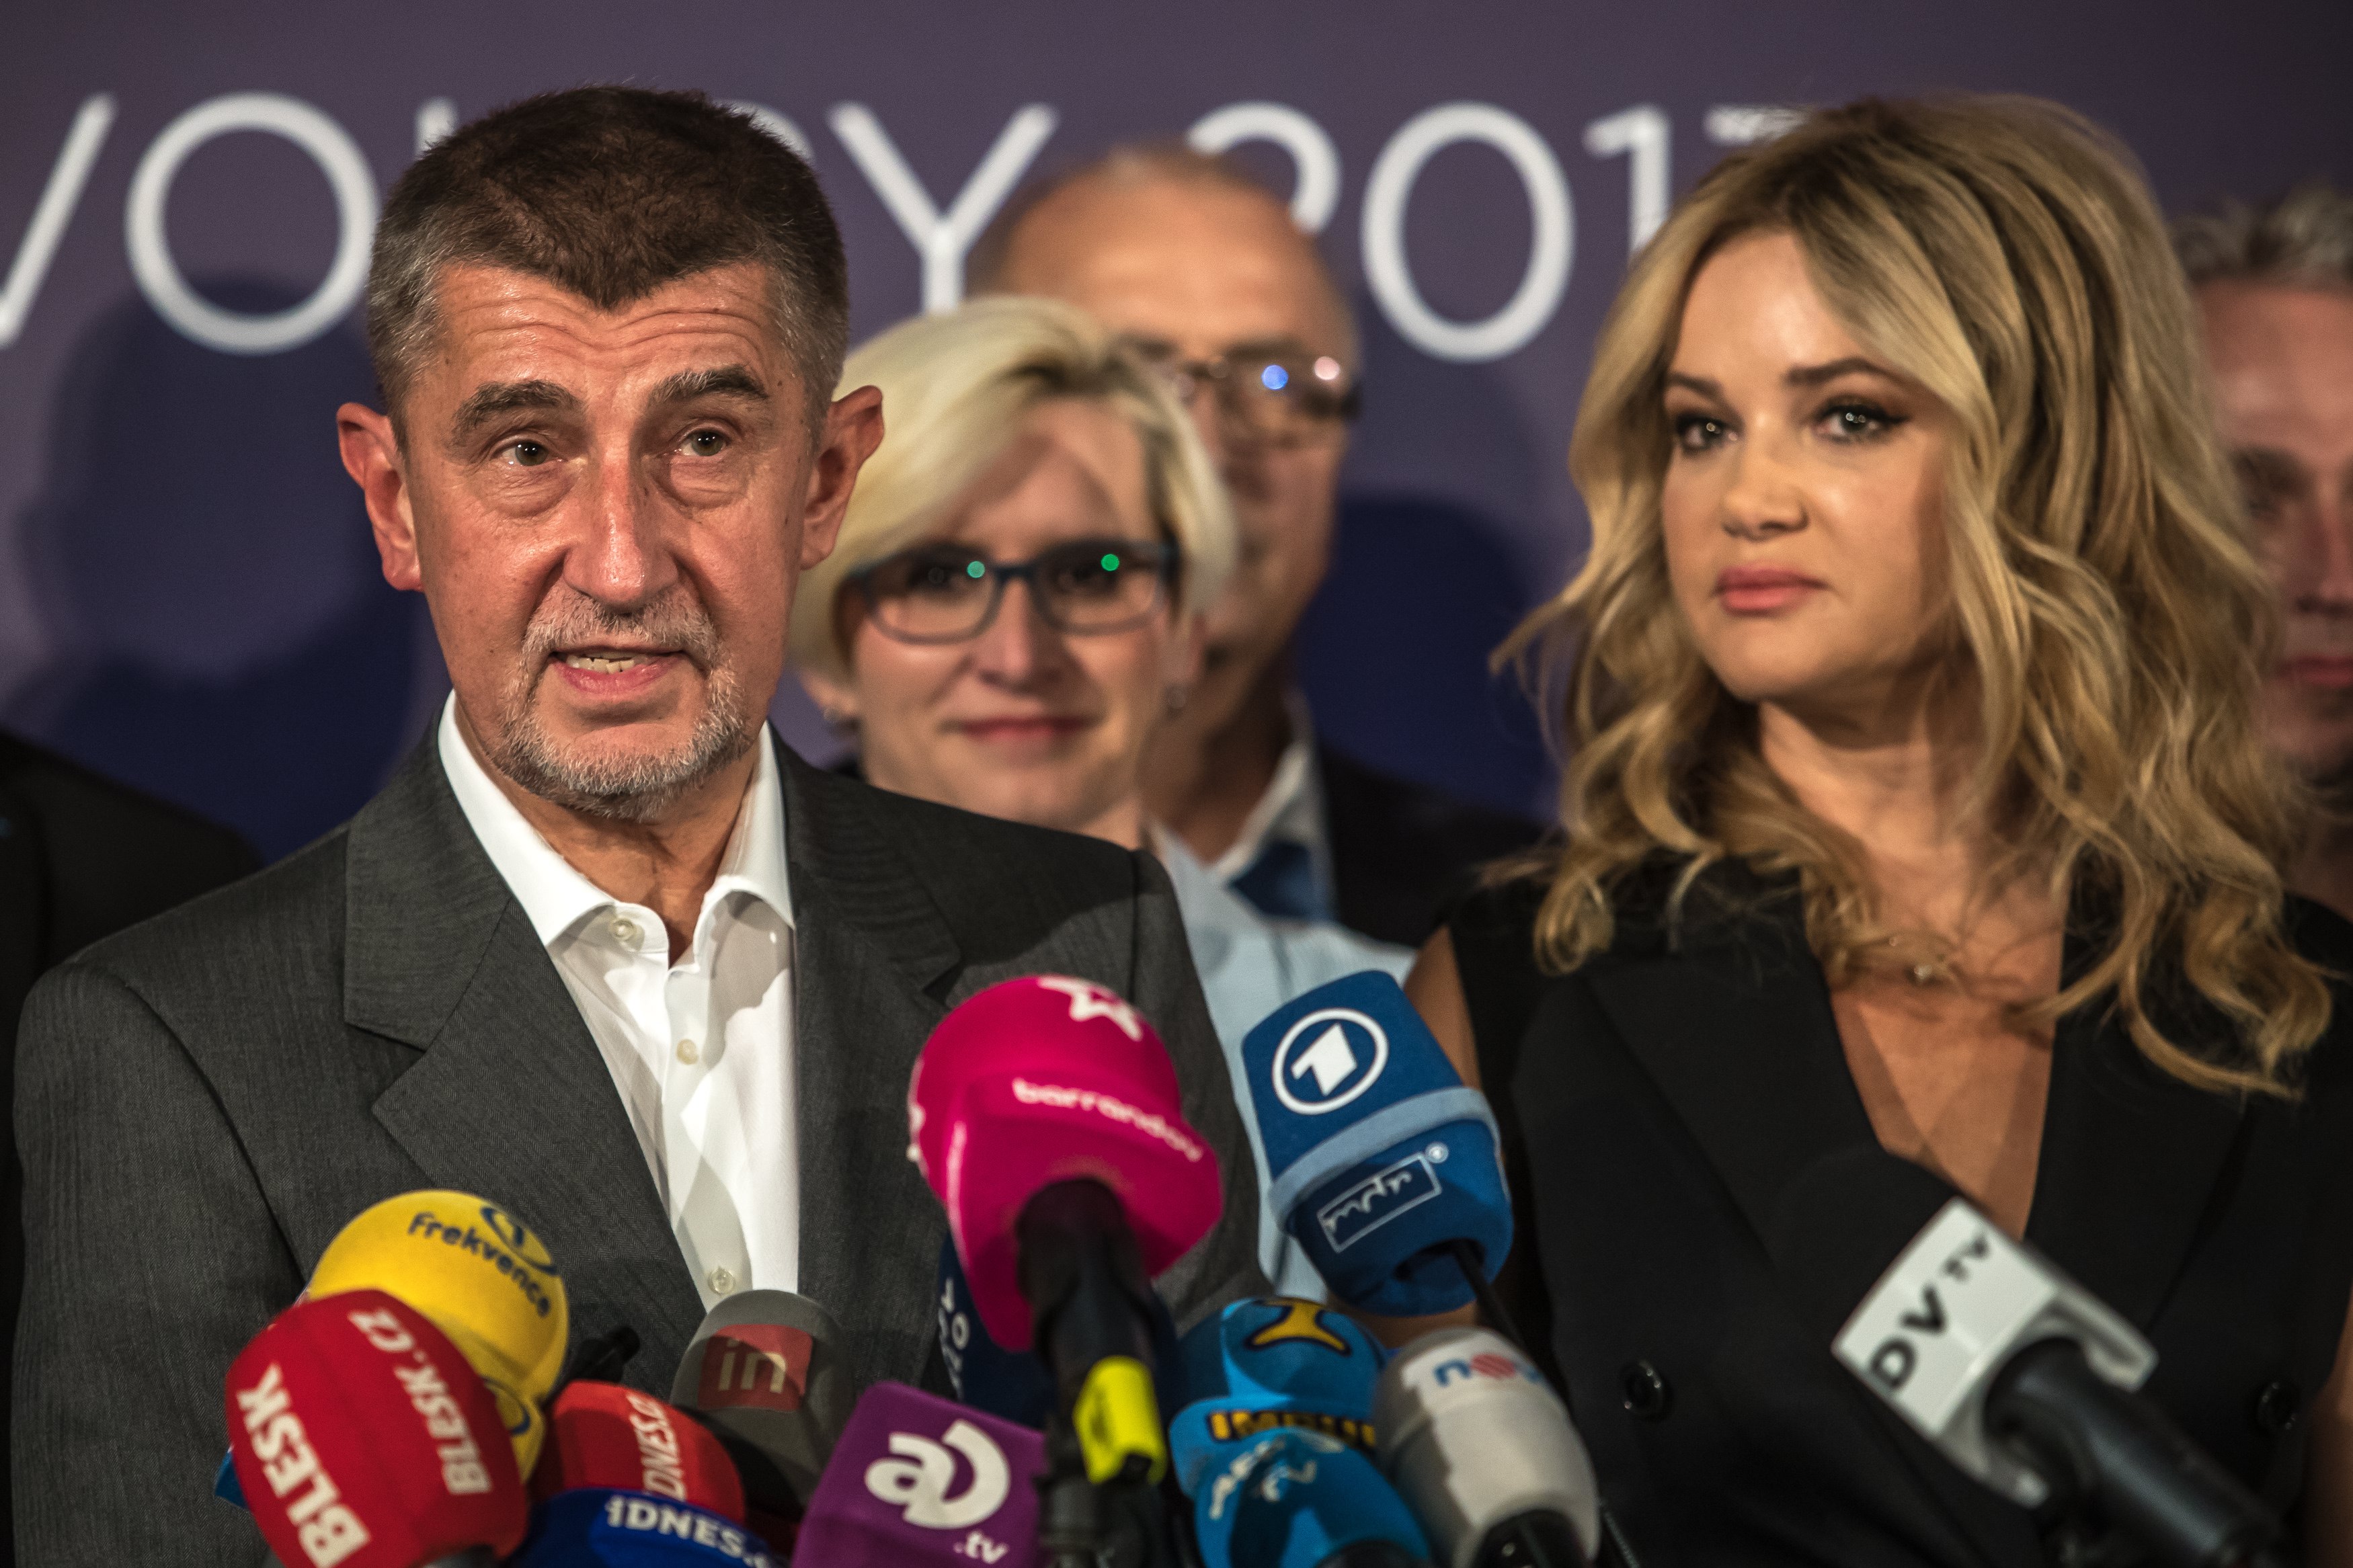 Τσεχία: Ενεργό ρόλο στην ΕΕ θα διεκδικήσει ο νικητής Αντρέι Μπάμπις